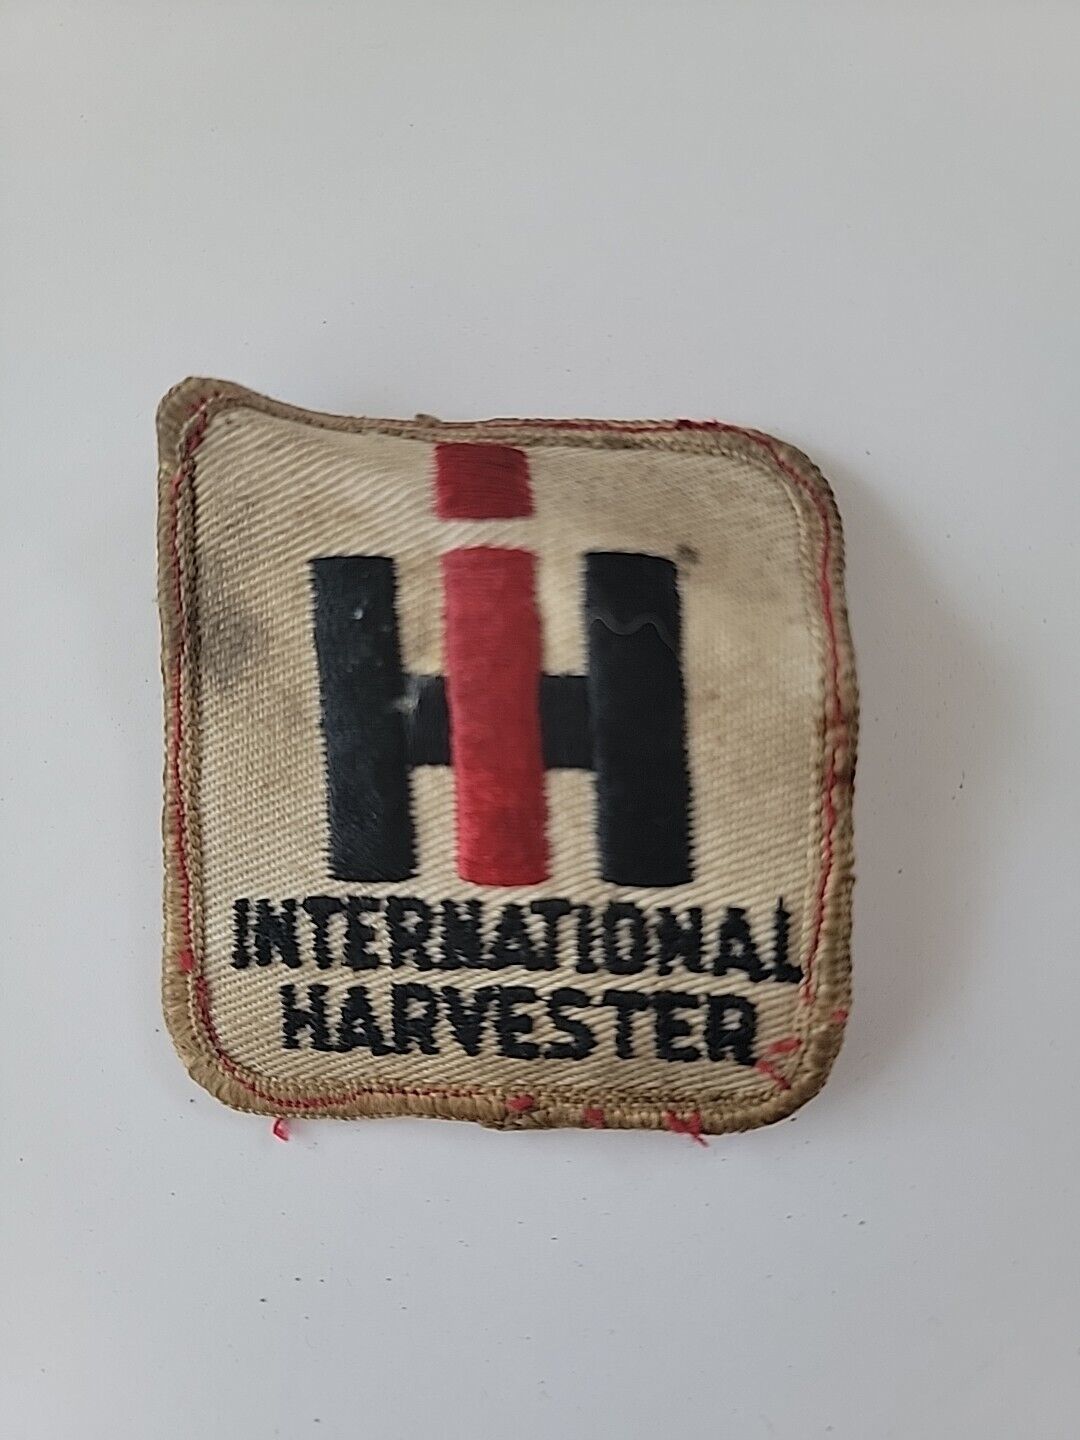 Vintage International Harvester Patch 162